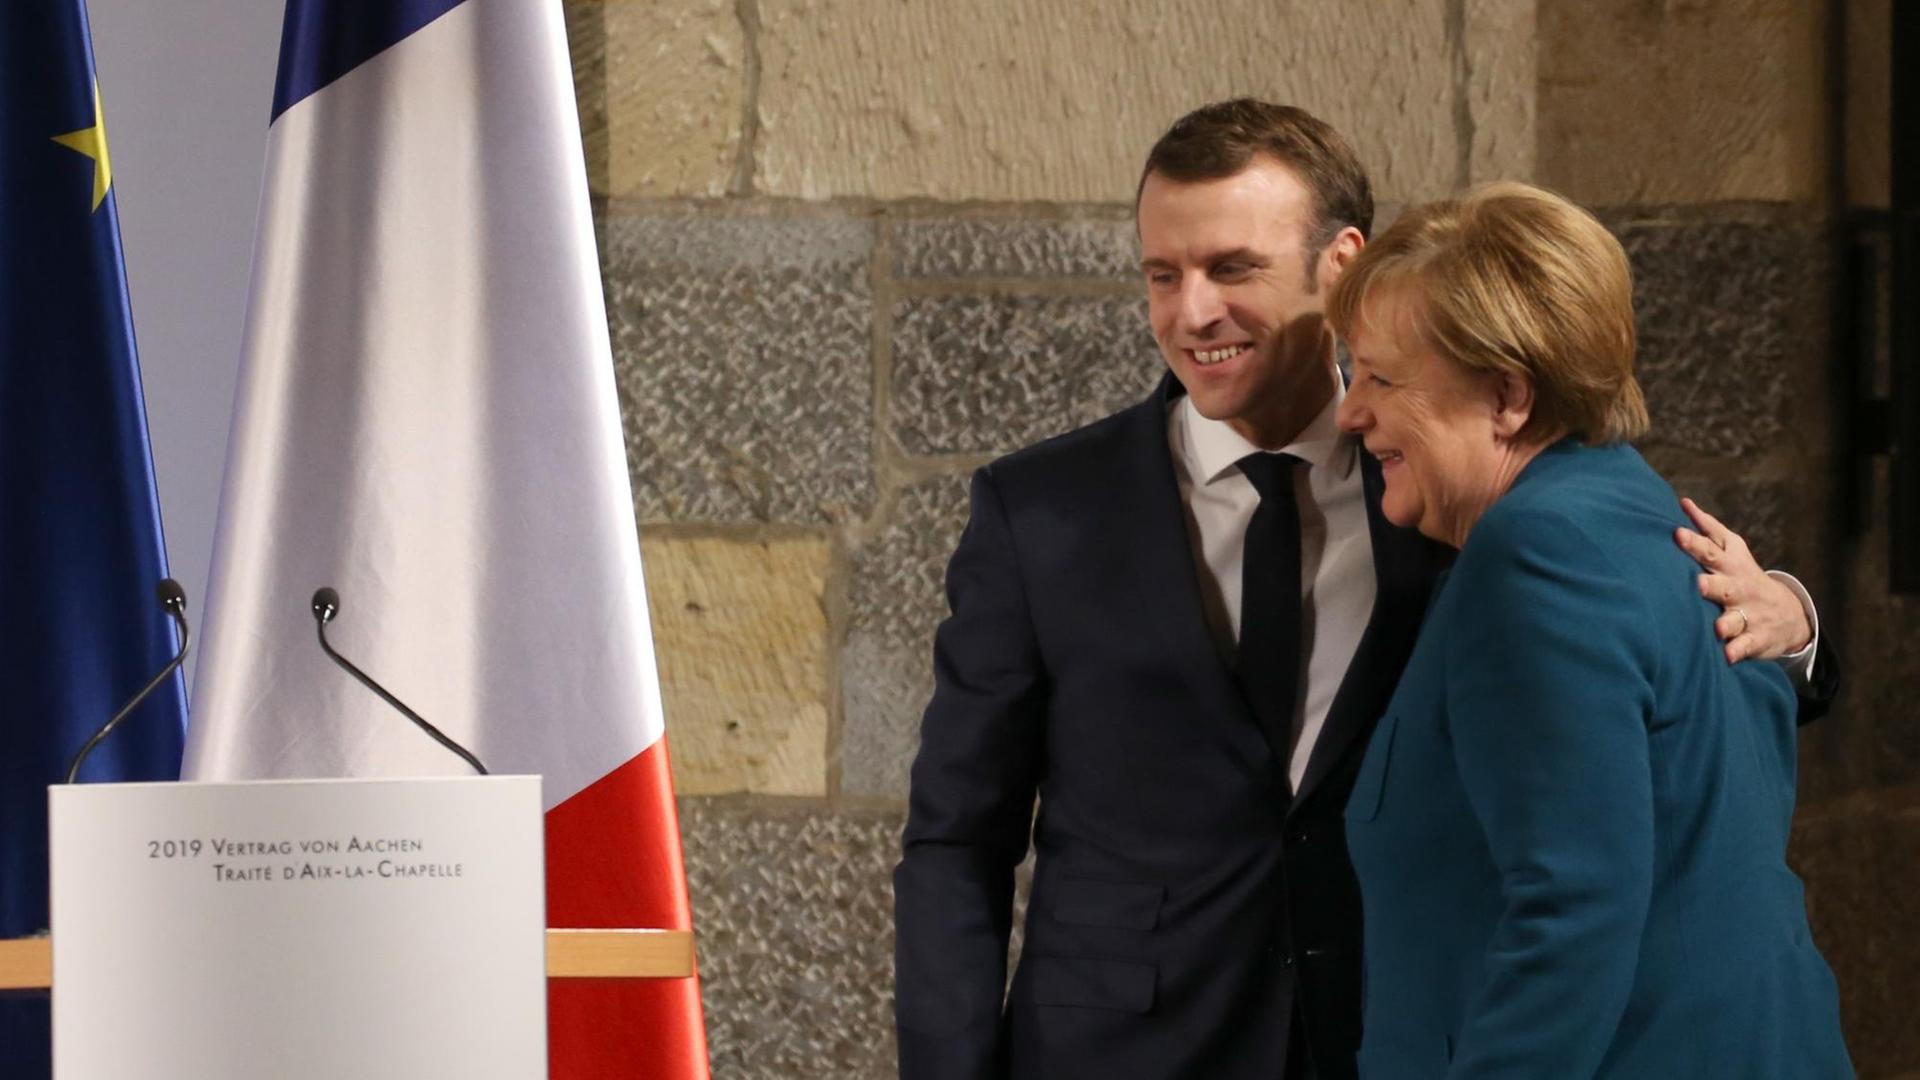 Präsident Macron umarmt Bundeskanzlerin Merkel. Neben ihnen stehen Flaggen.